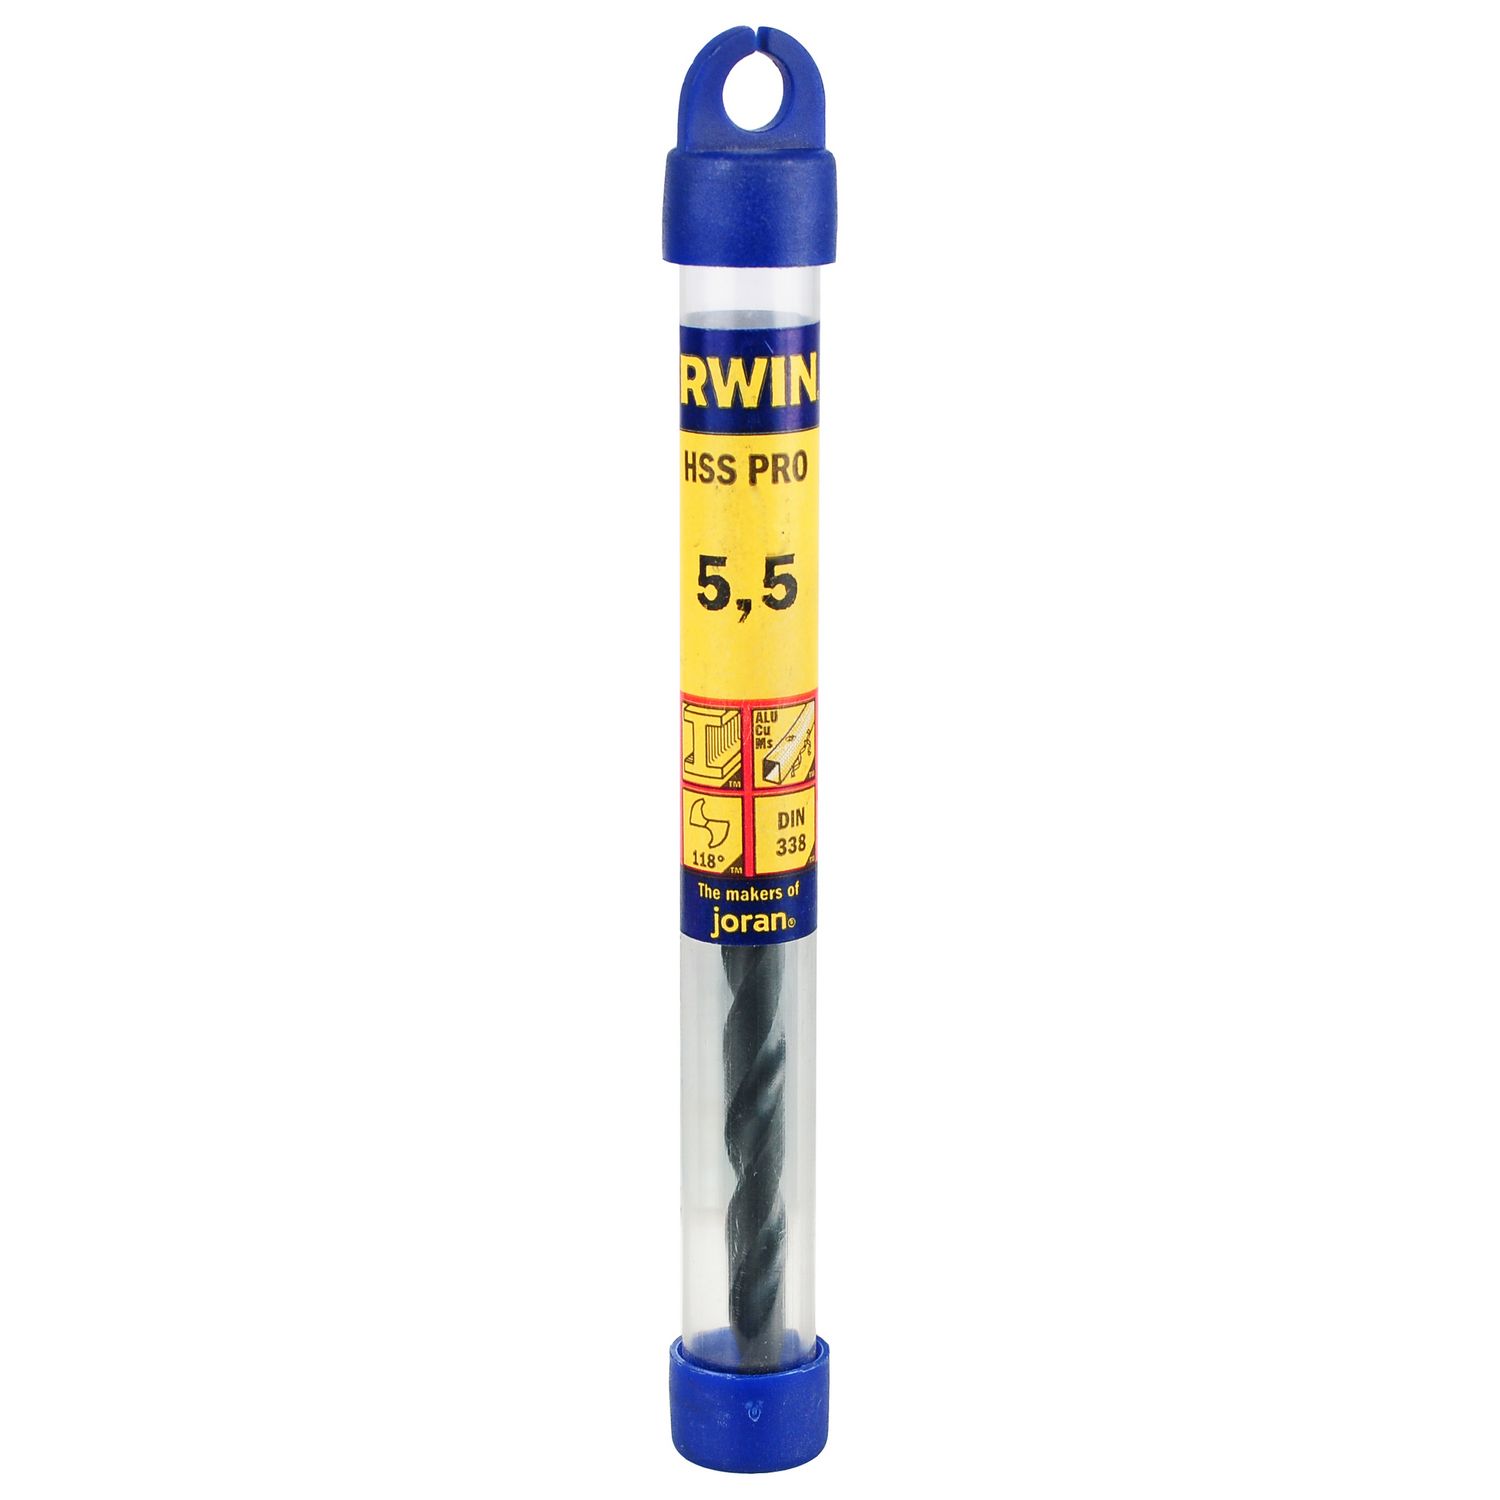 Irwin 10502388 HSS Pro Drill Bit